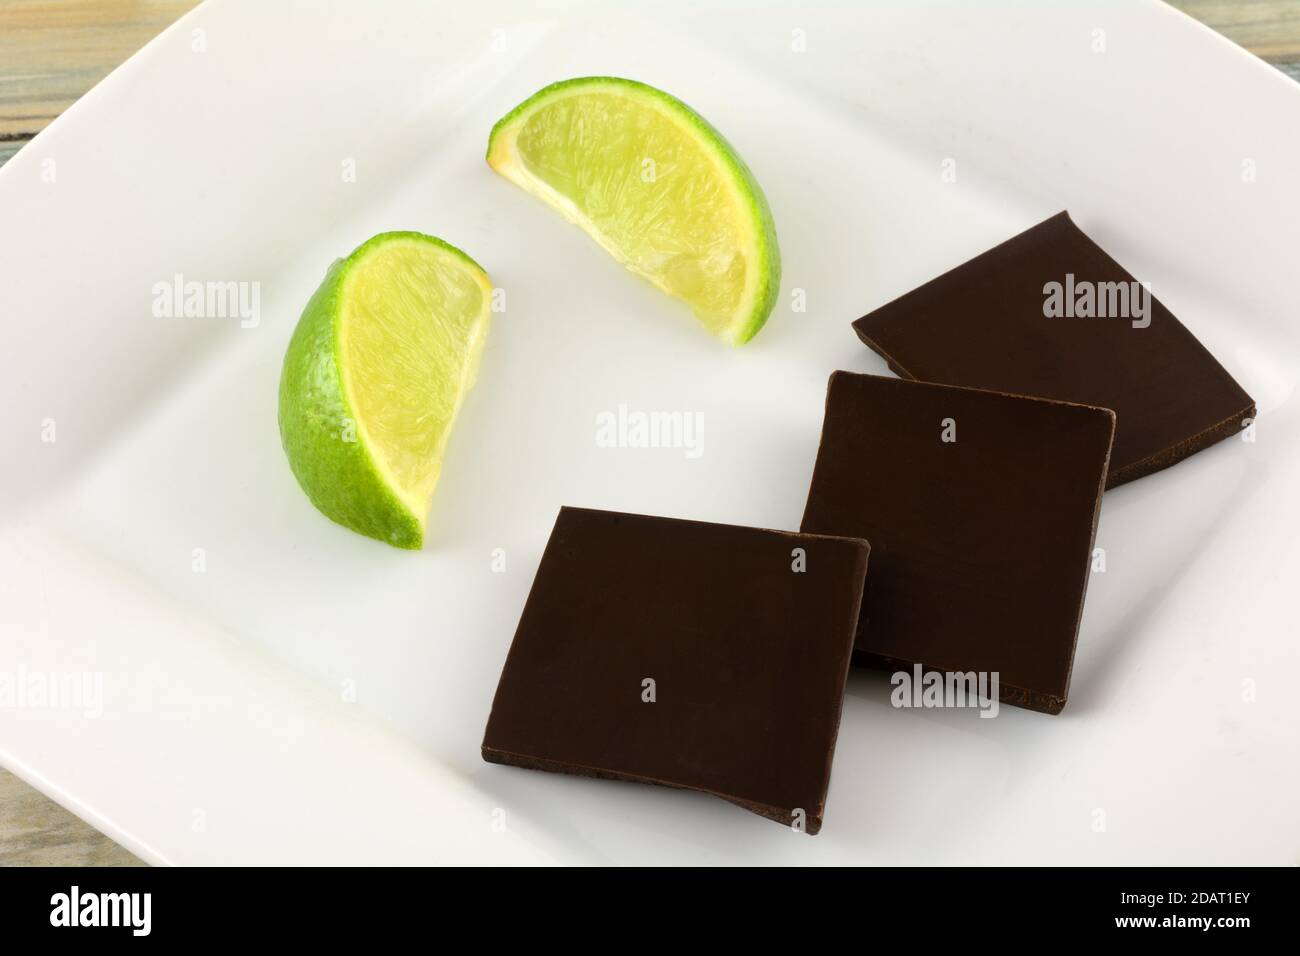 Limette und Minze dunkle Schokolade Stück mit frischen Limetten Keile auf weißem Dessertteller Stockfoto